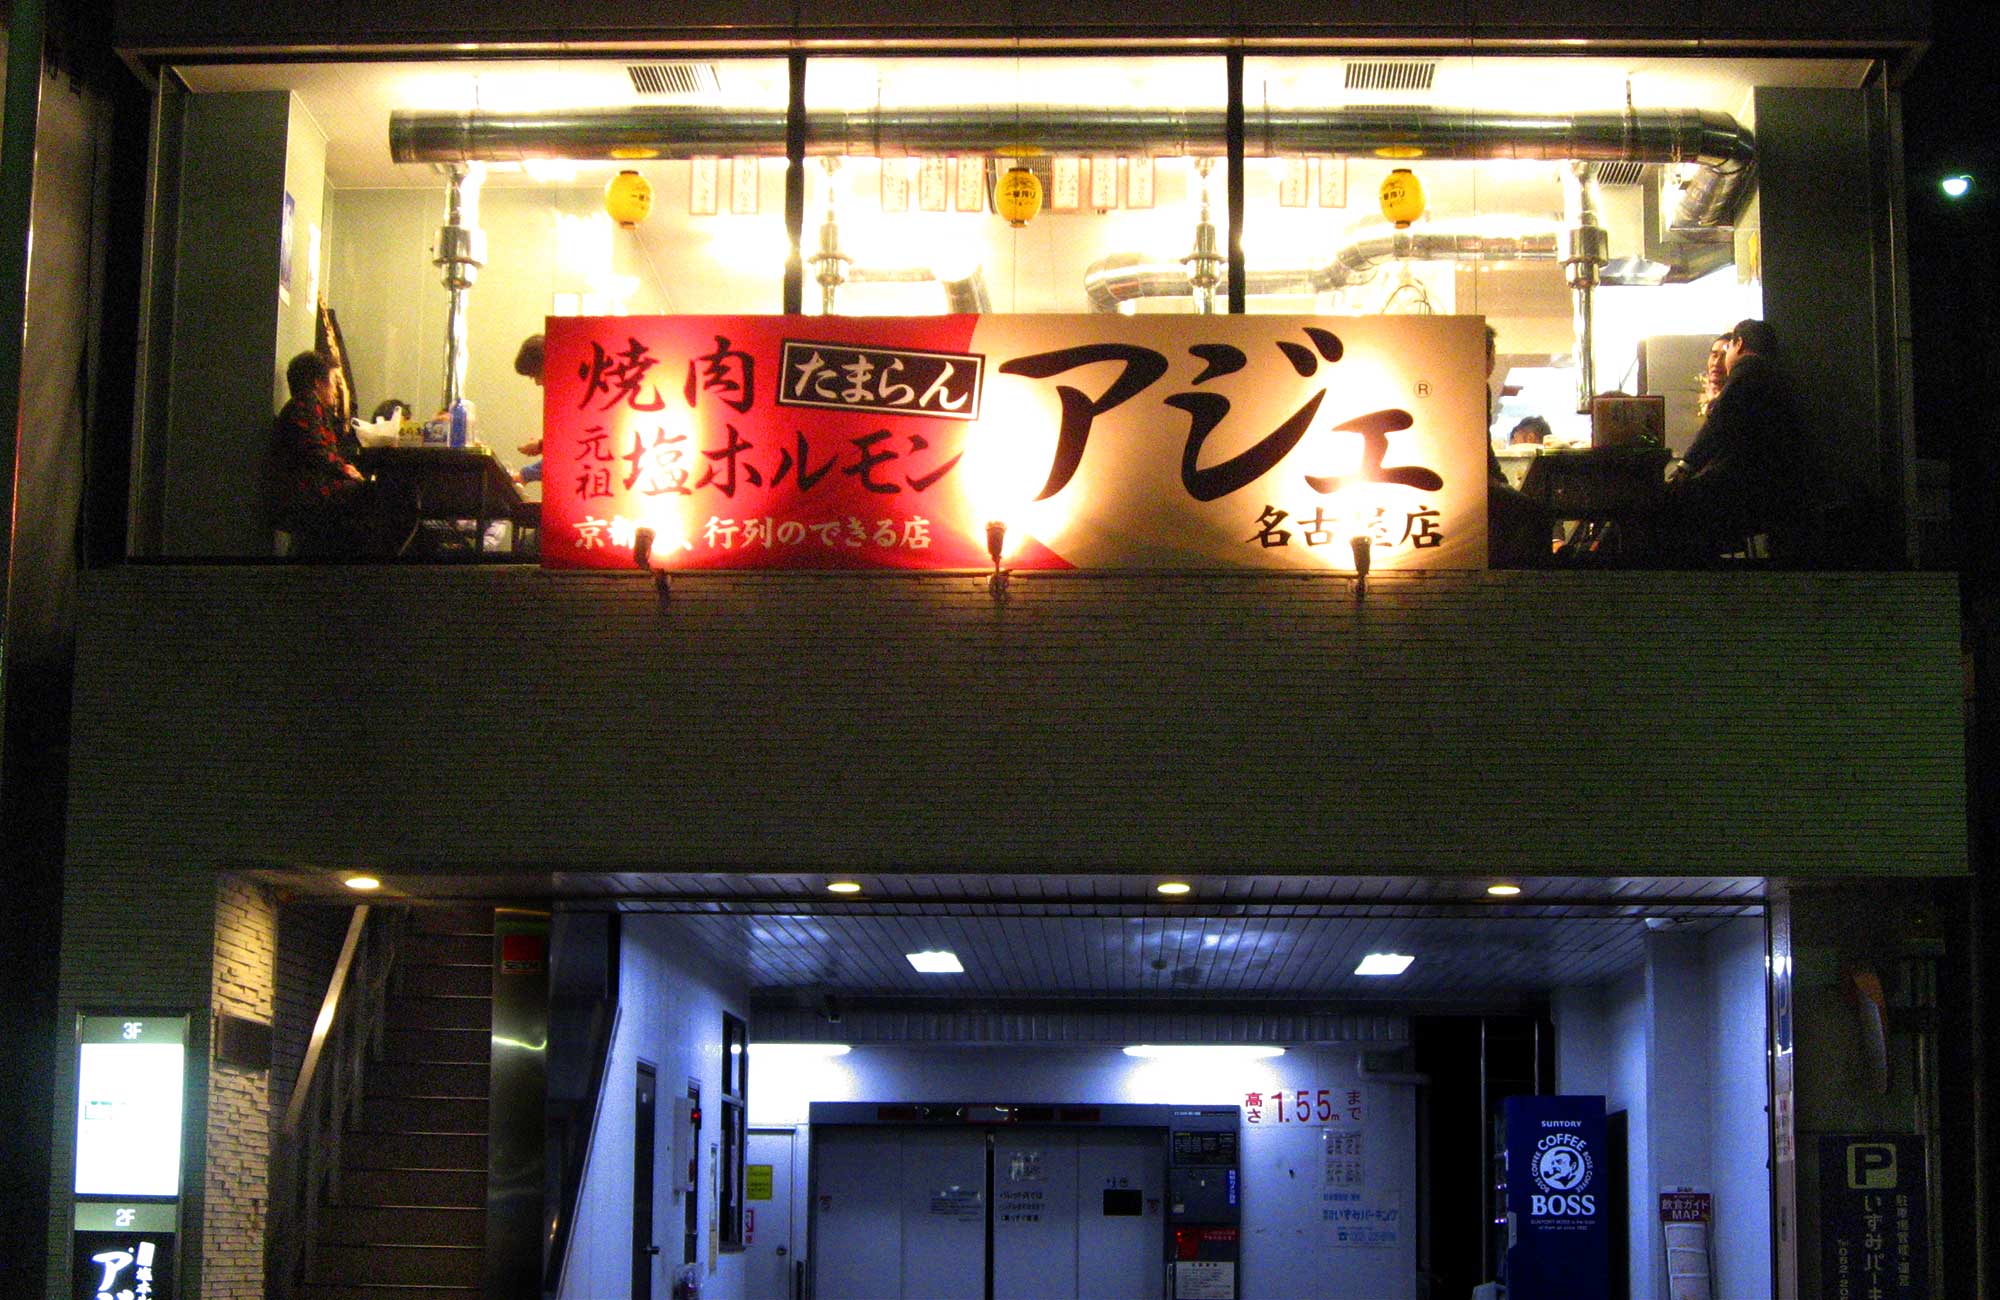 「アジェ® 名古屋店」京都府外初出店のフランチャイズ1号店は名古屋駅近の好立地。元アジェ®ファンのオーナーの腕が光る。